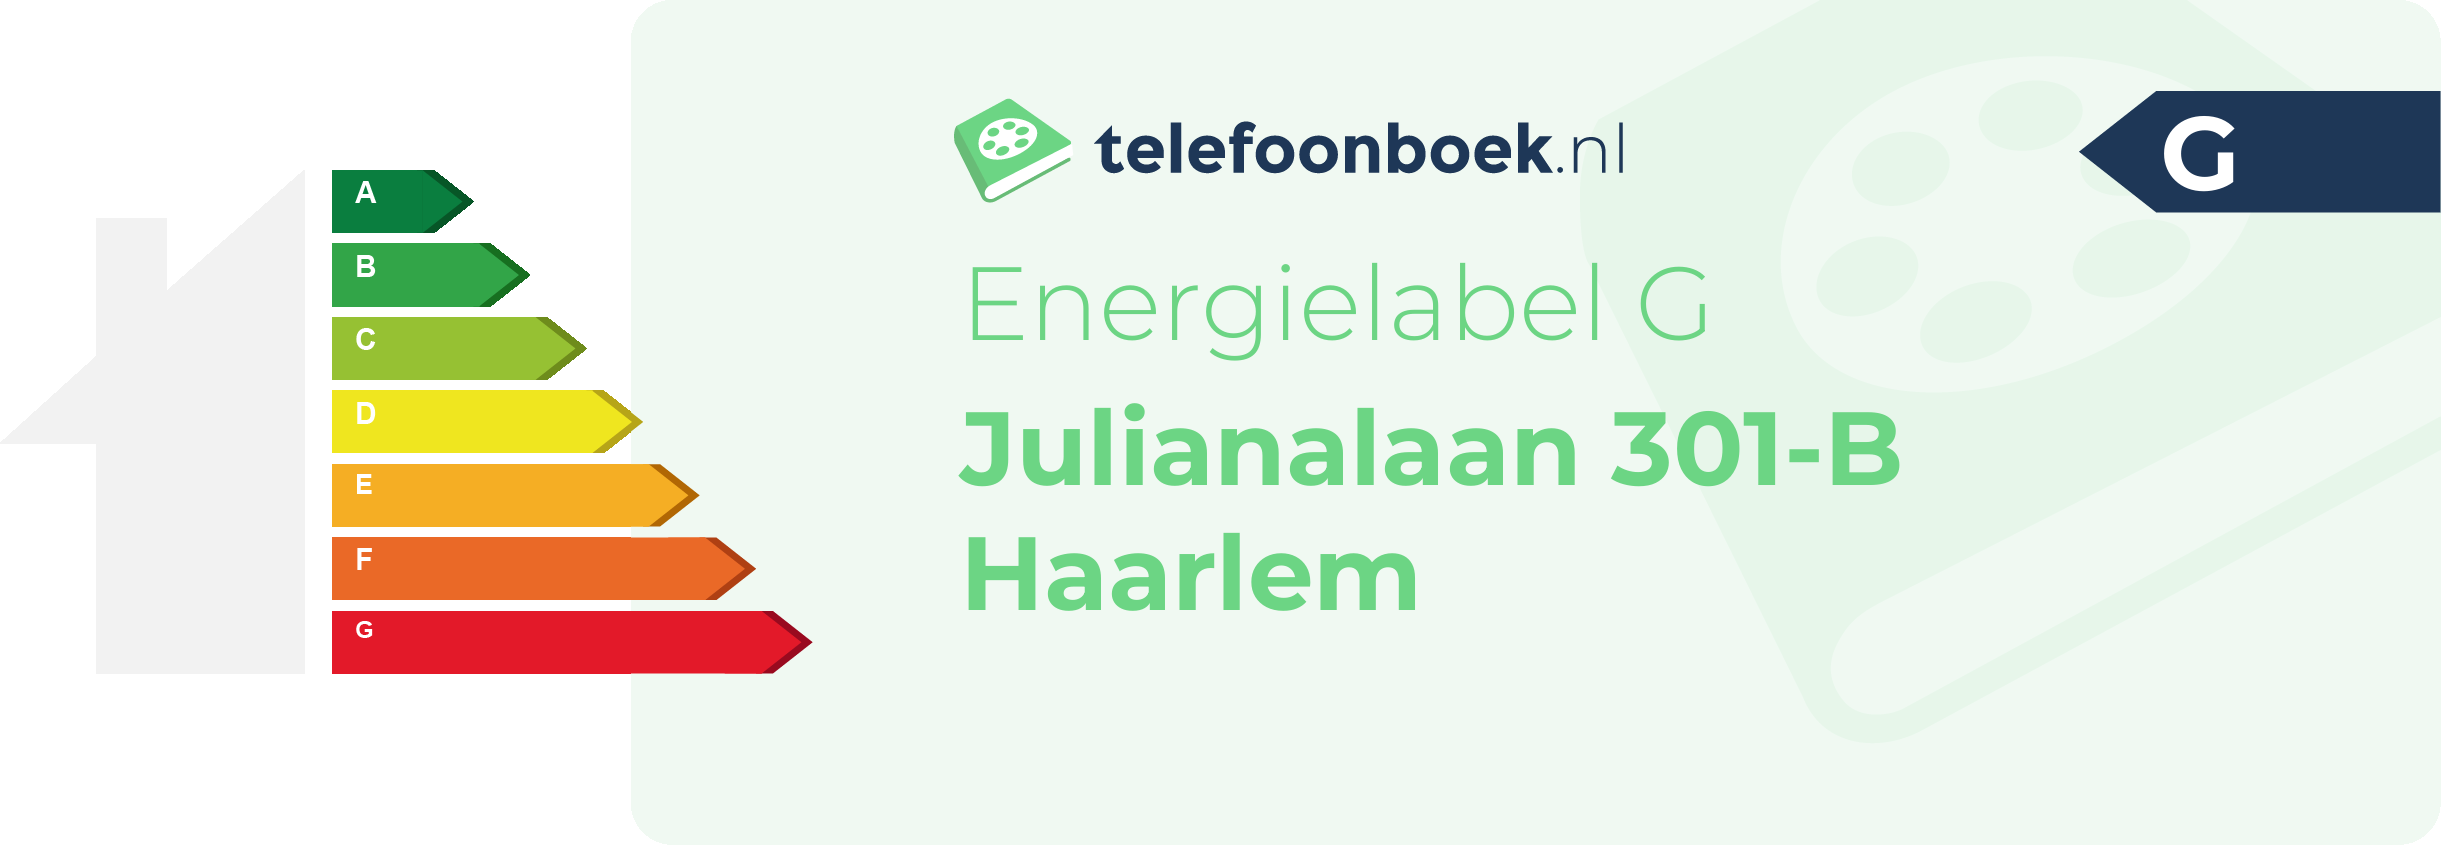 Energielabel Julianalaan 301-B Haarlem